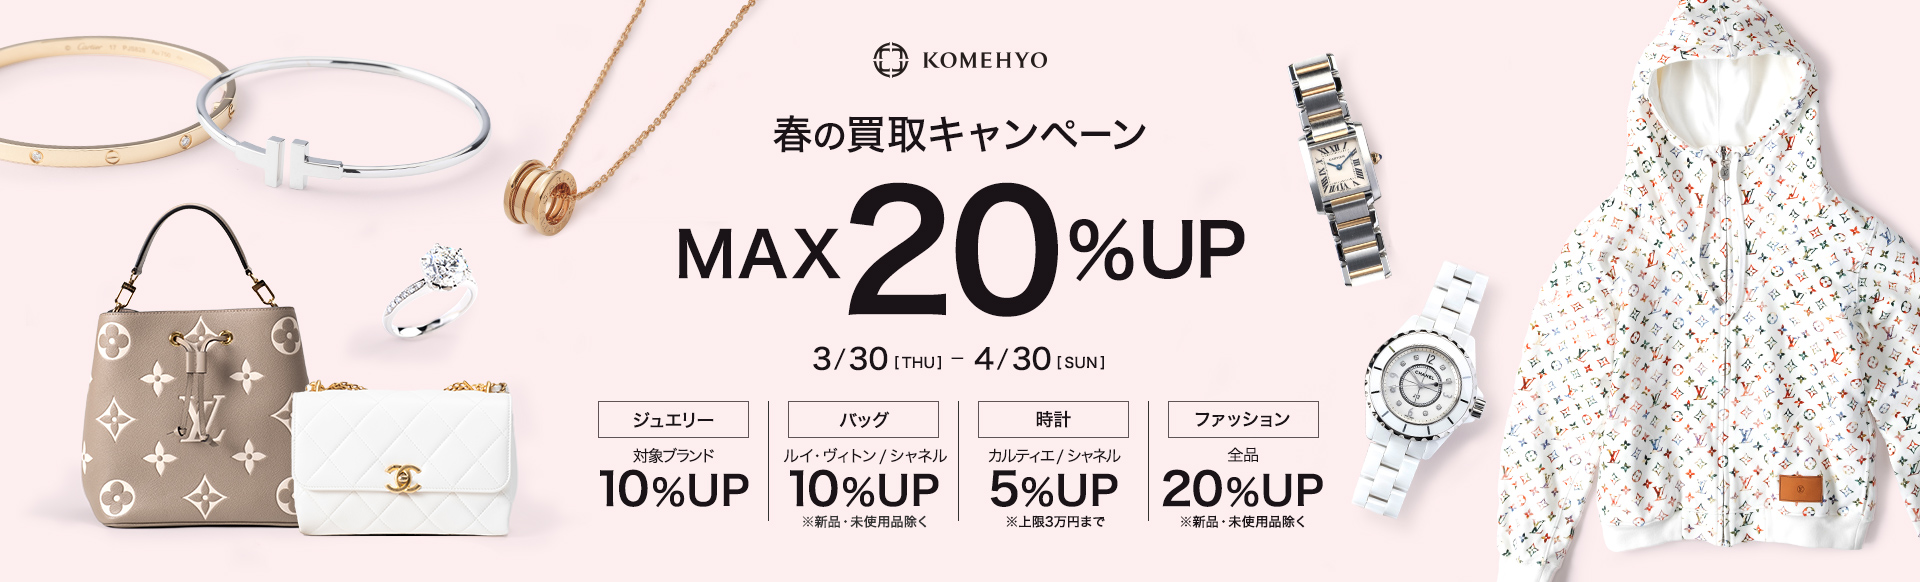 春の買取りキャンペーン MAX20%UP 3/30[THU]-4/30[SUN]